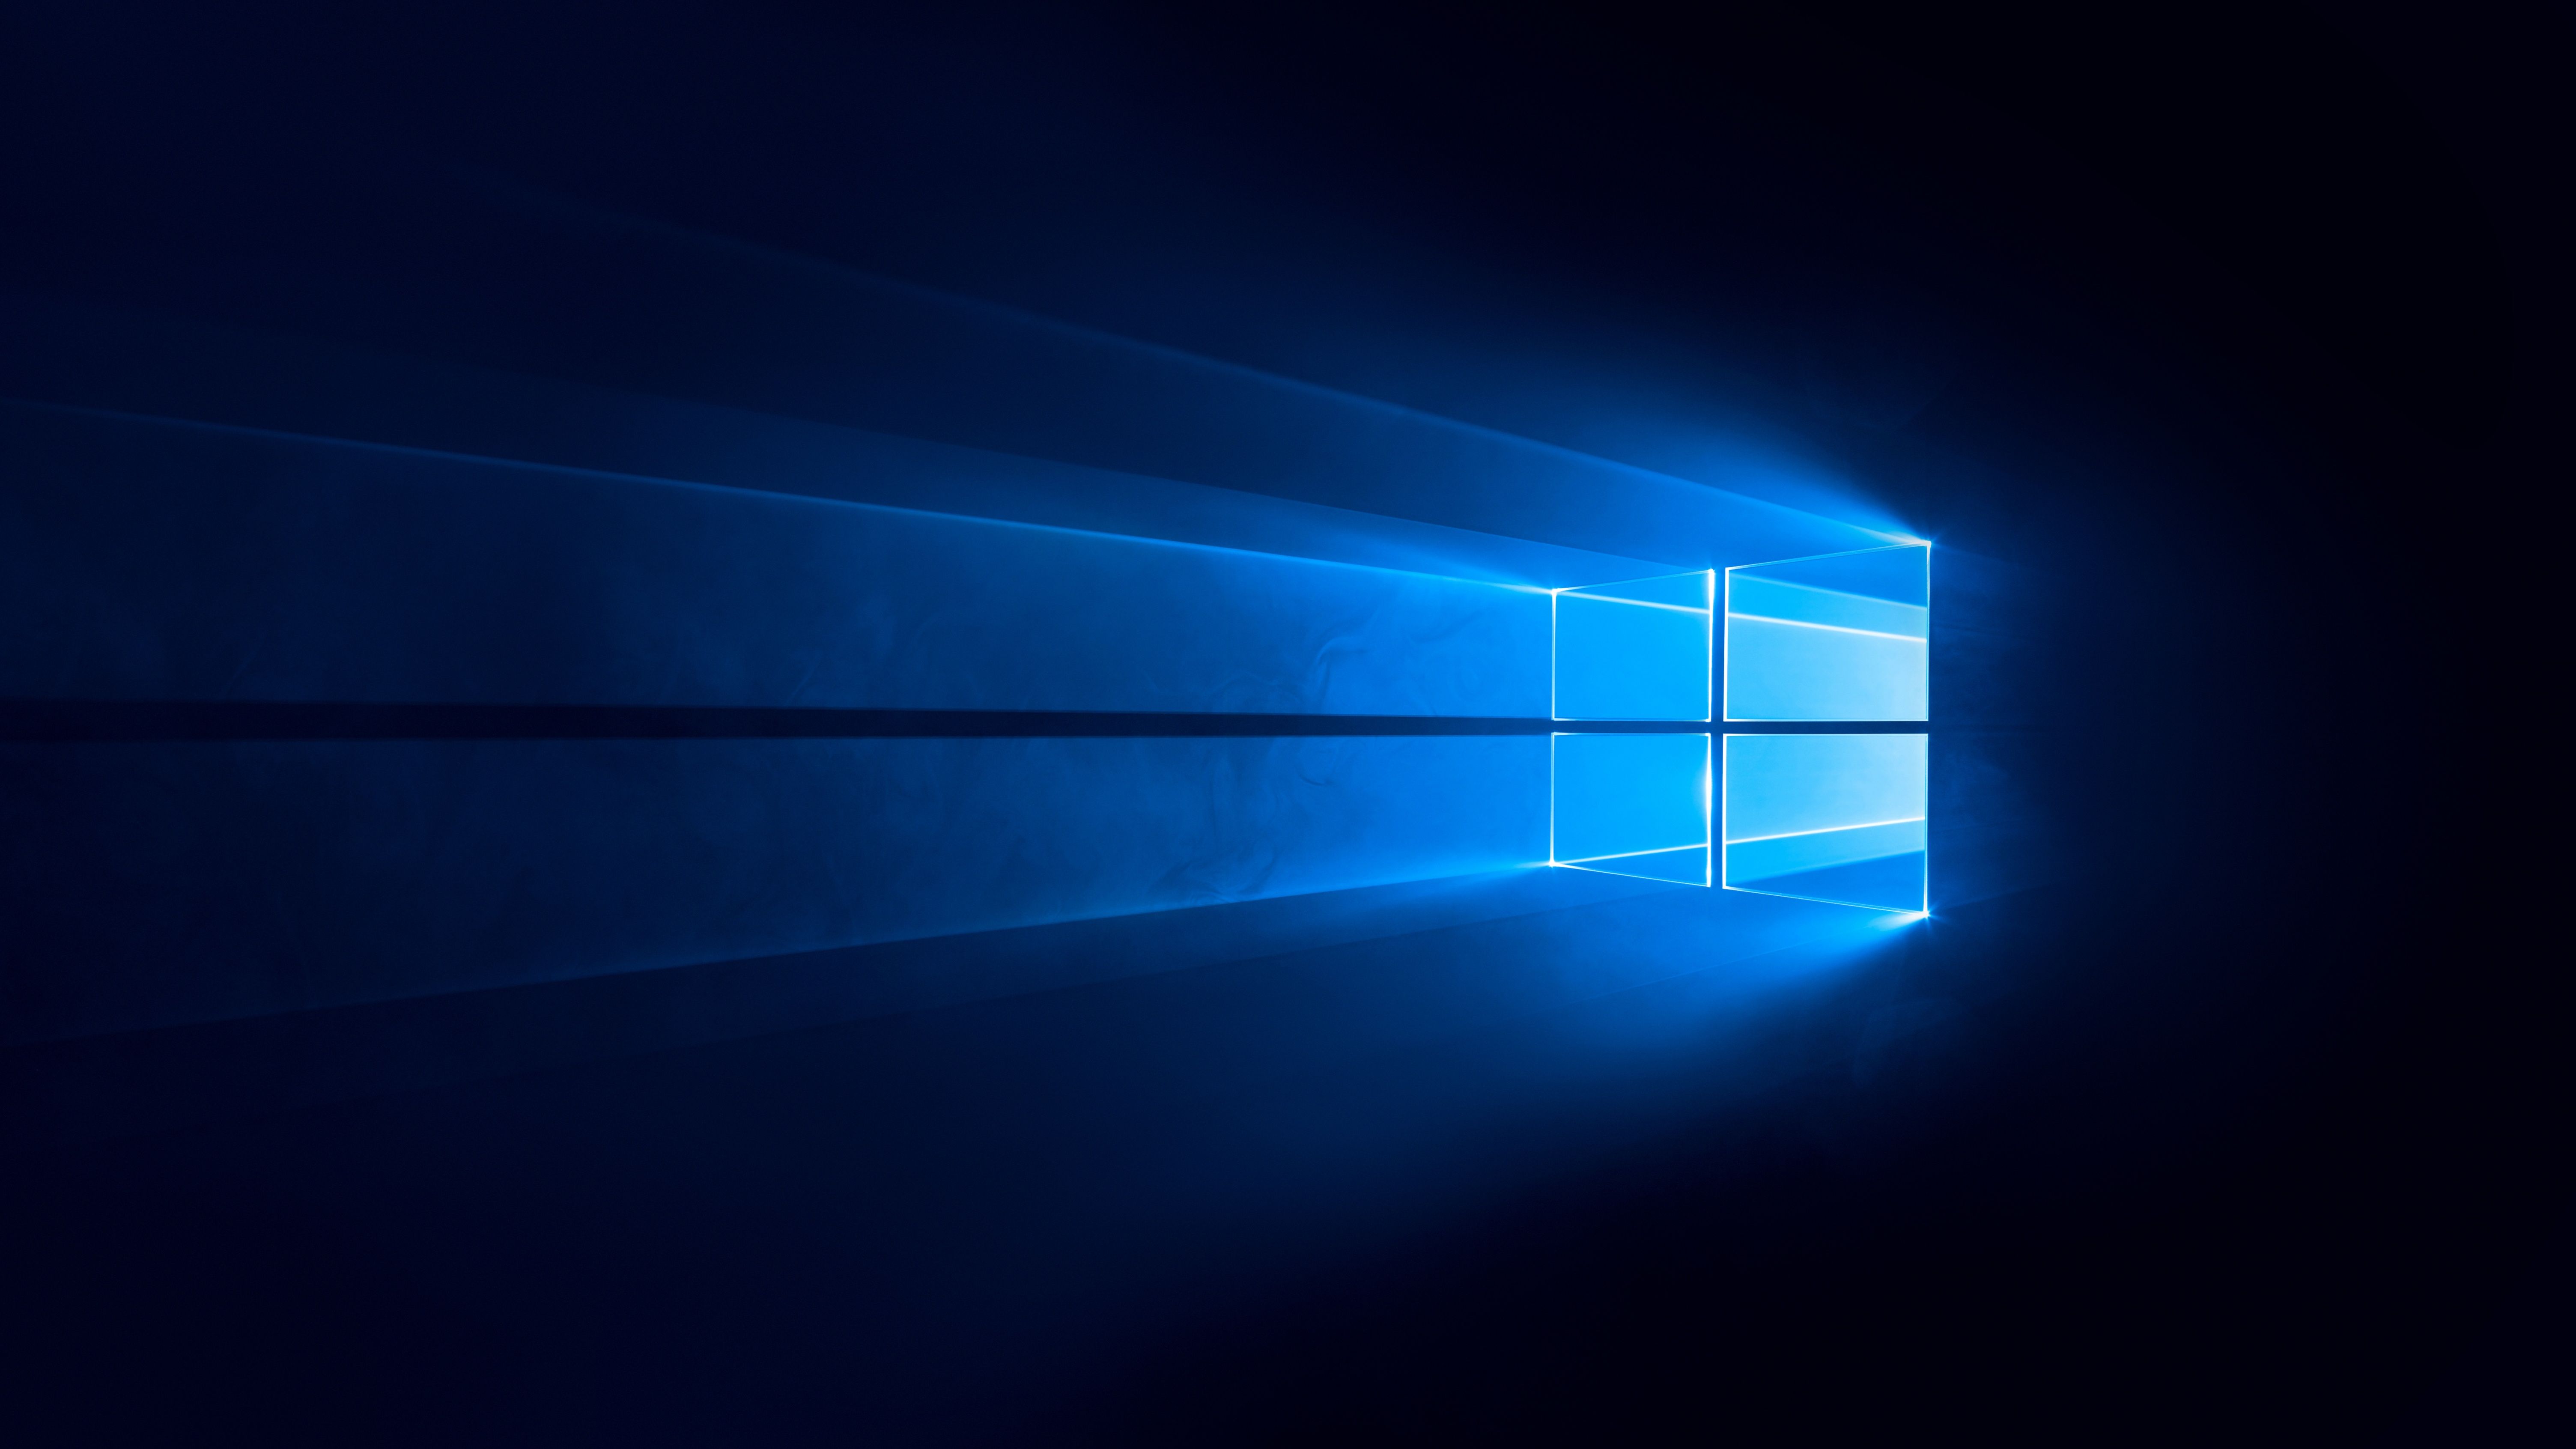  Windows 10 HD Hintergrundbild 6016x3384. Windows 10 Wallpaper 4K, Dark, Blue background, Technology